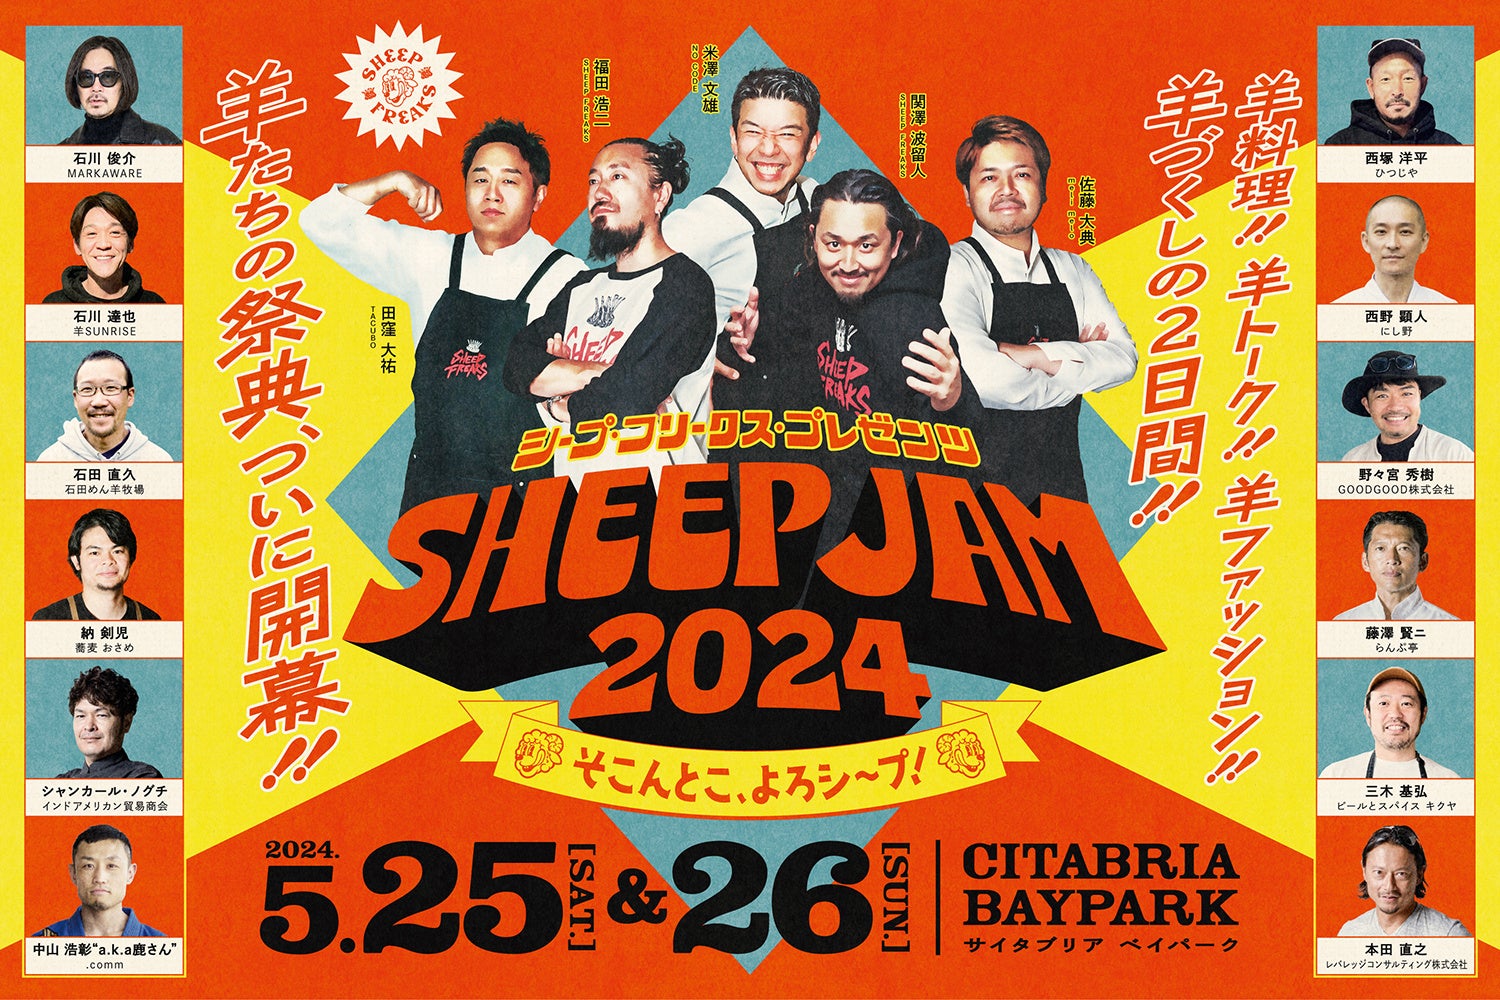 超一流シェフと各界のトップランナーが集結。羊づくしの祭典「SHEEP JAM 2024」をSHEEP FREAKSが初開催！